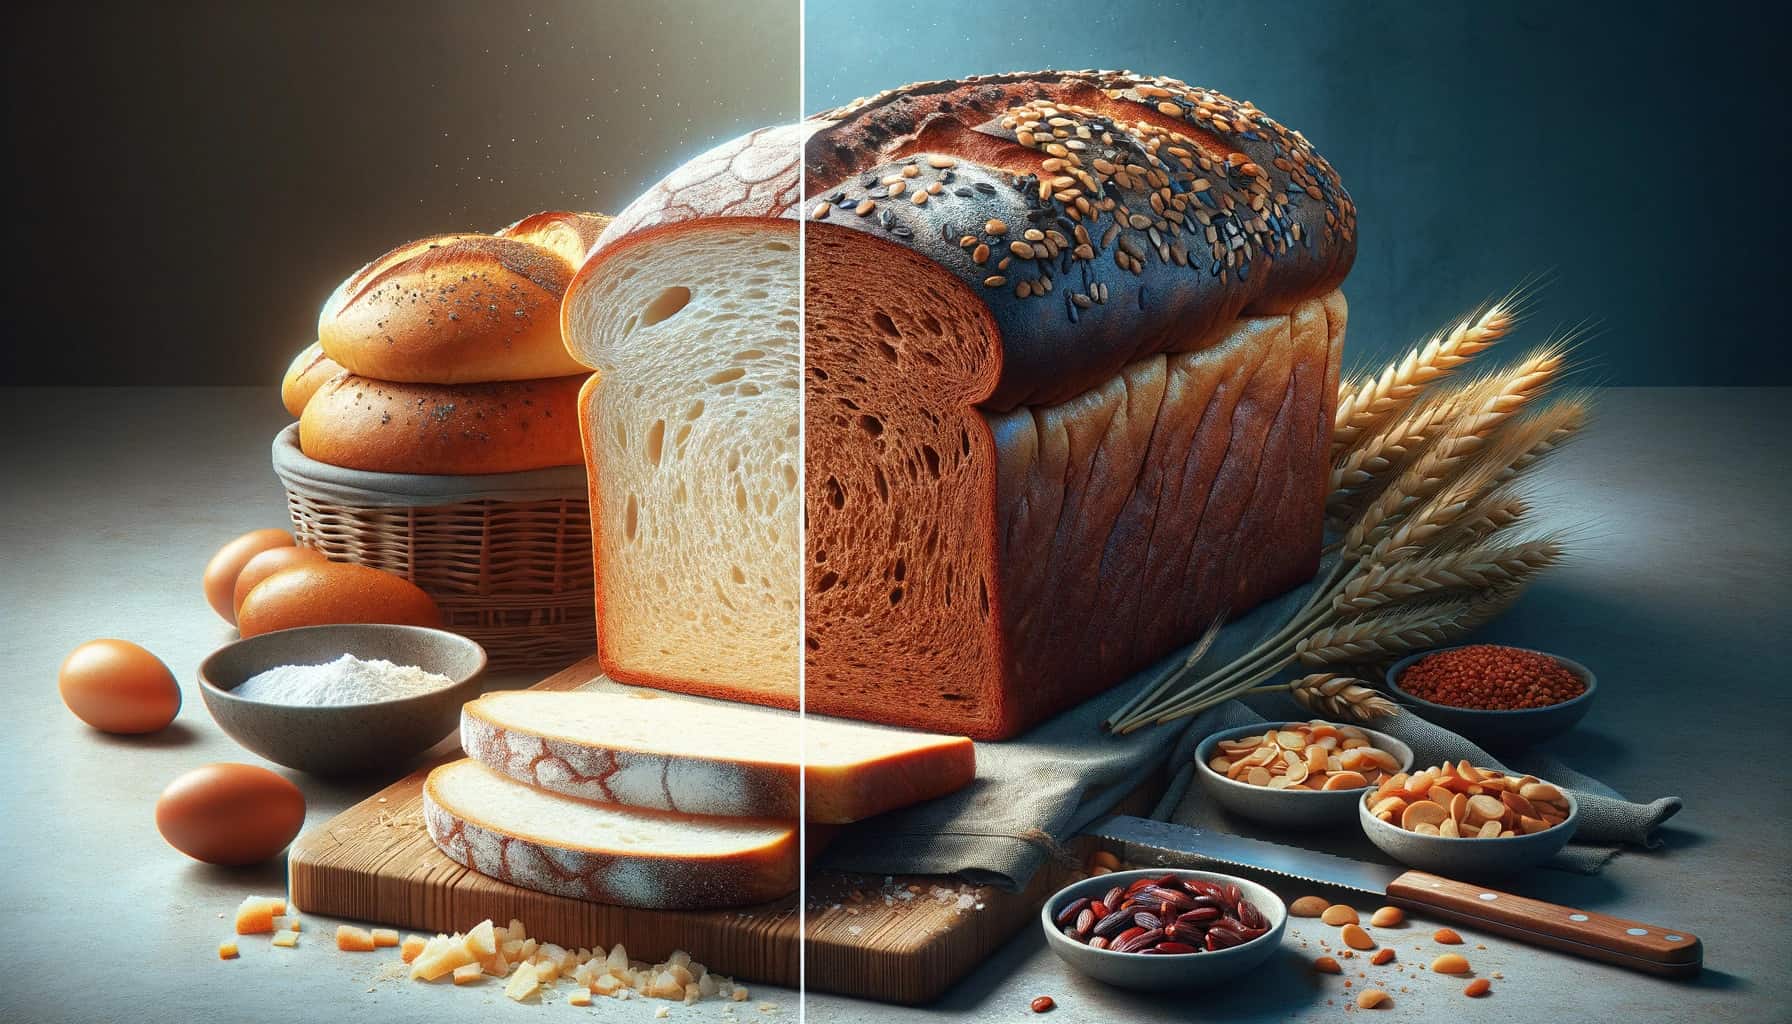 Gluten free bread vs regular bread